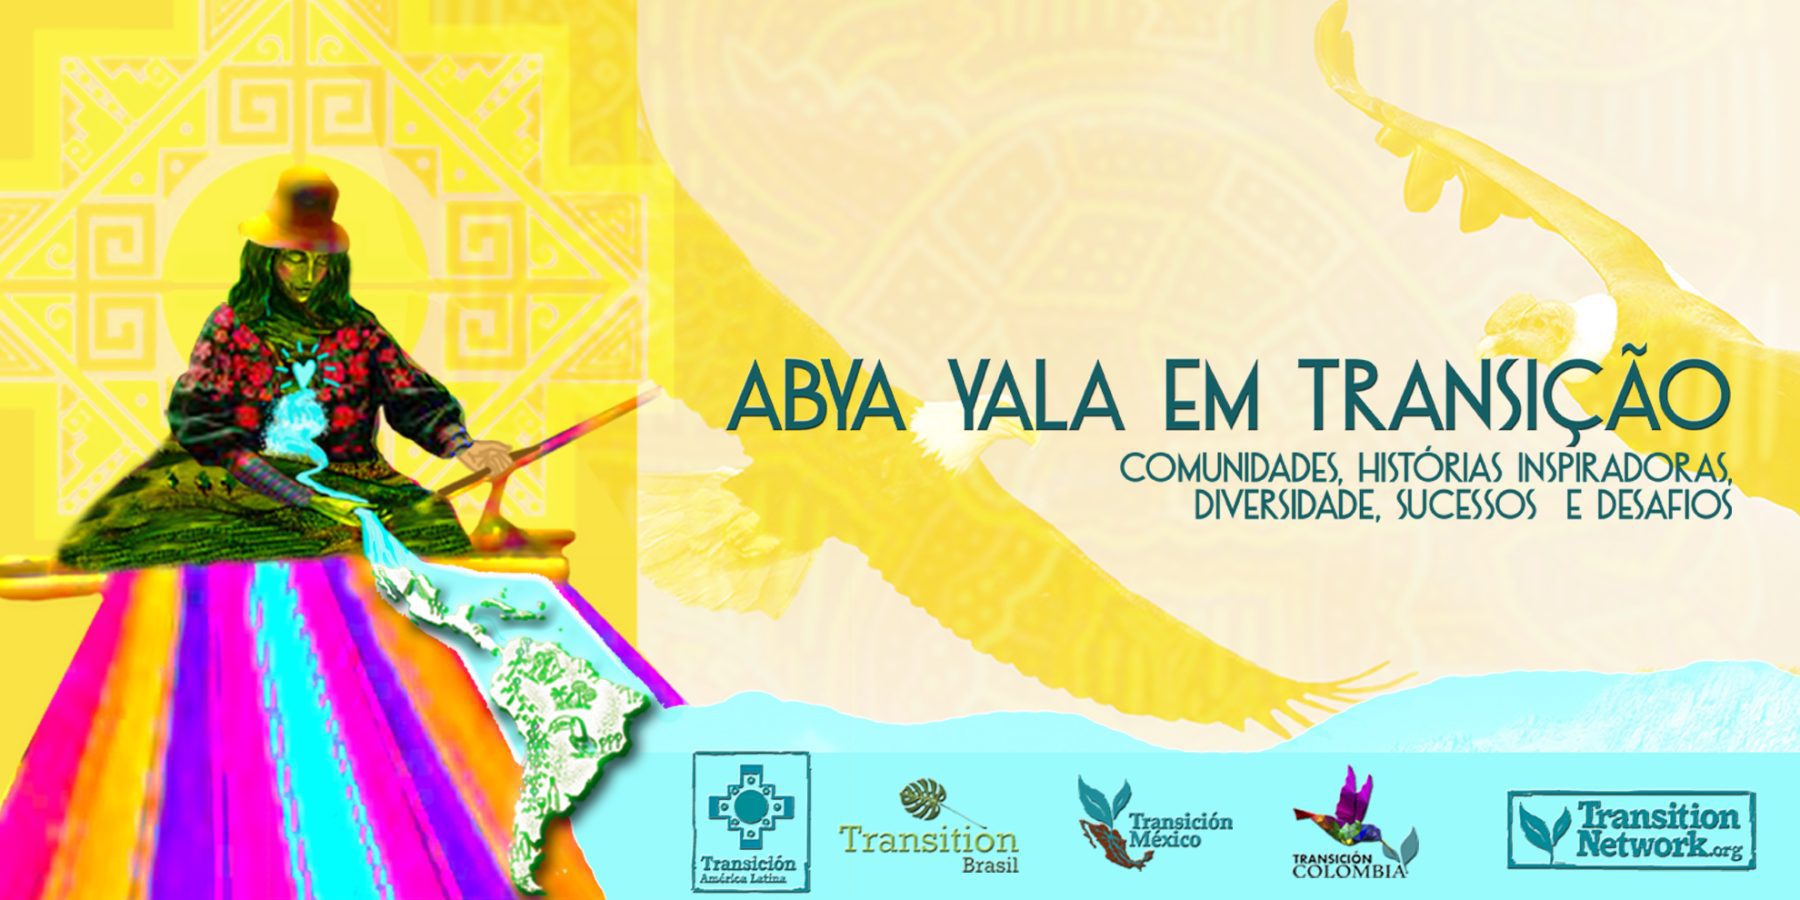 Abya Yala em Transição - Comunidades, Historias Inspiradoras, Diversidade, Sucessos e Desafios